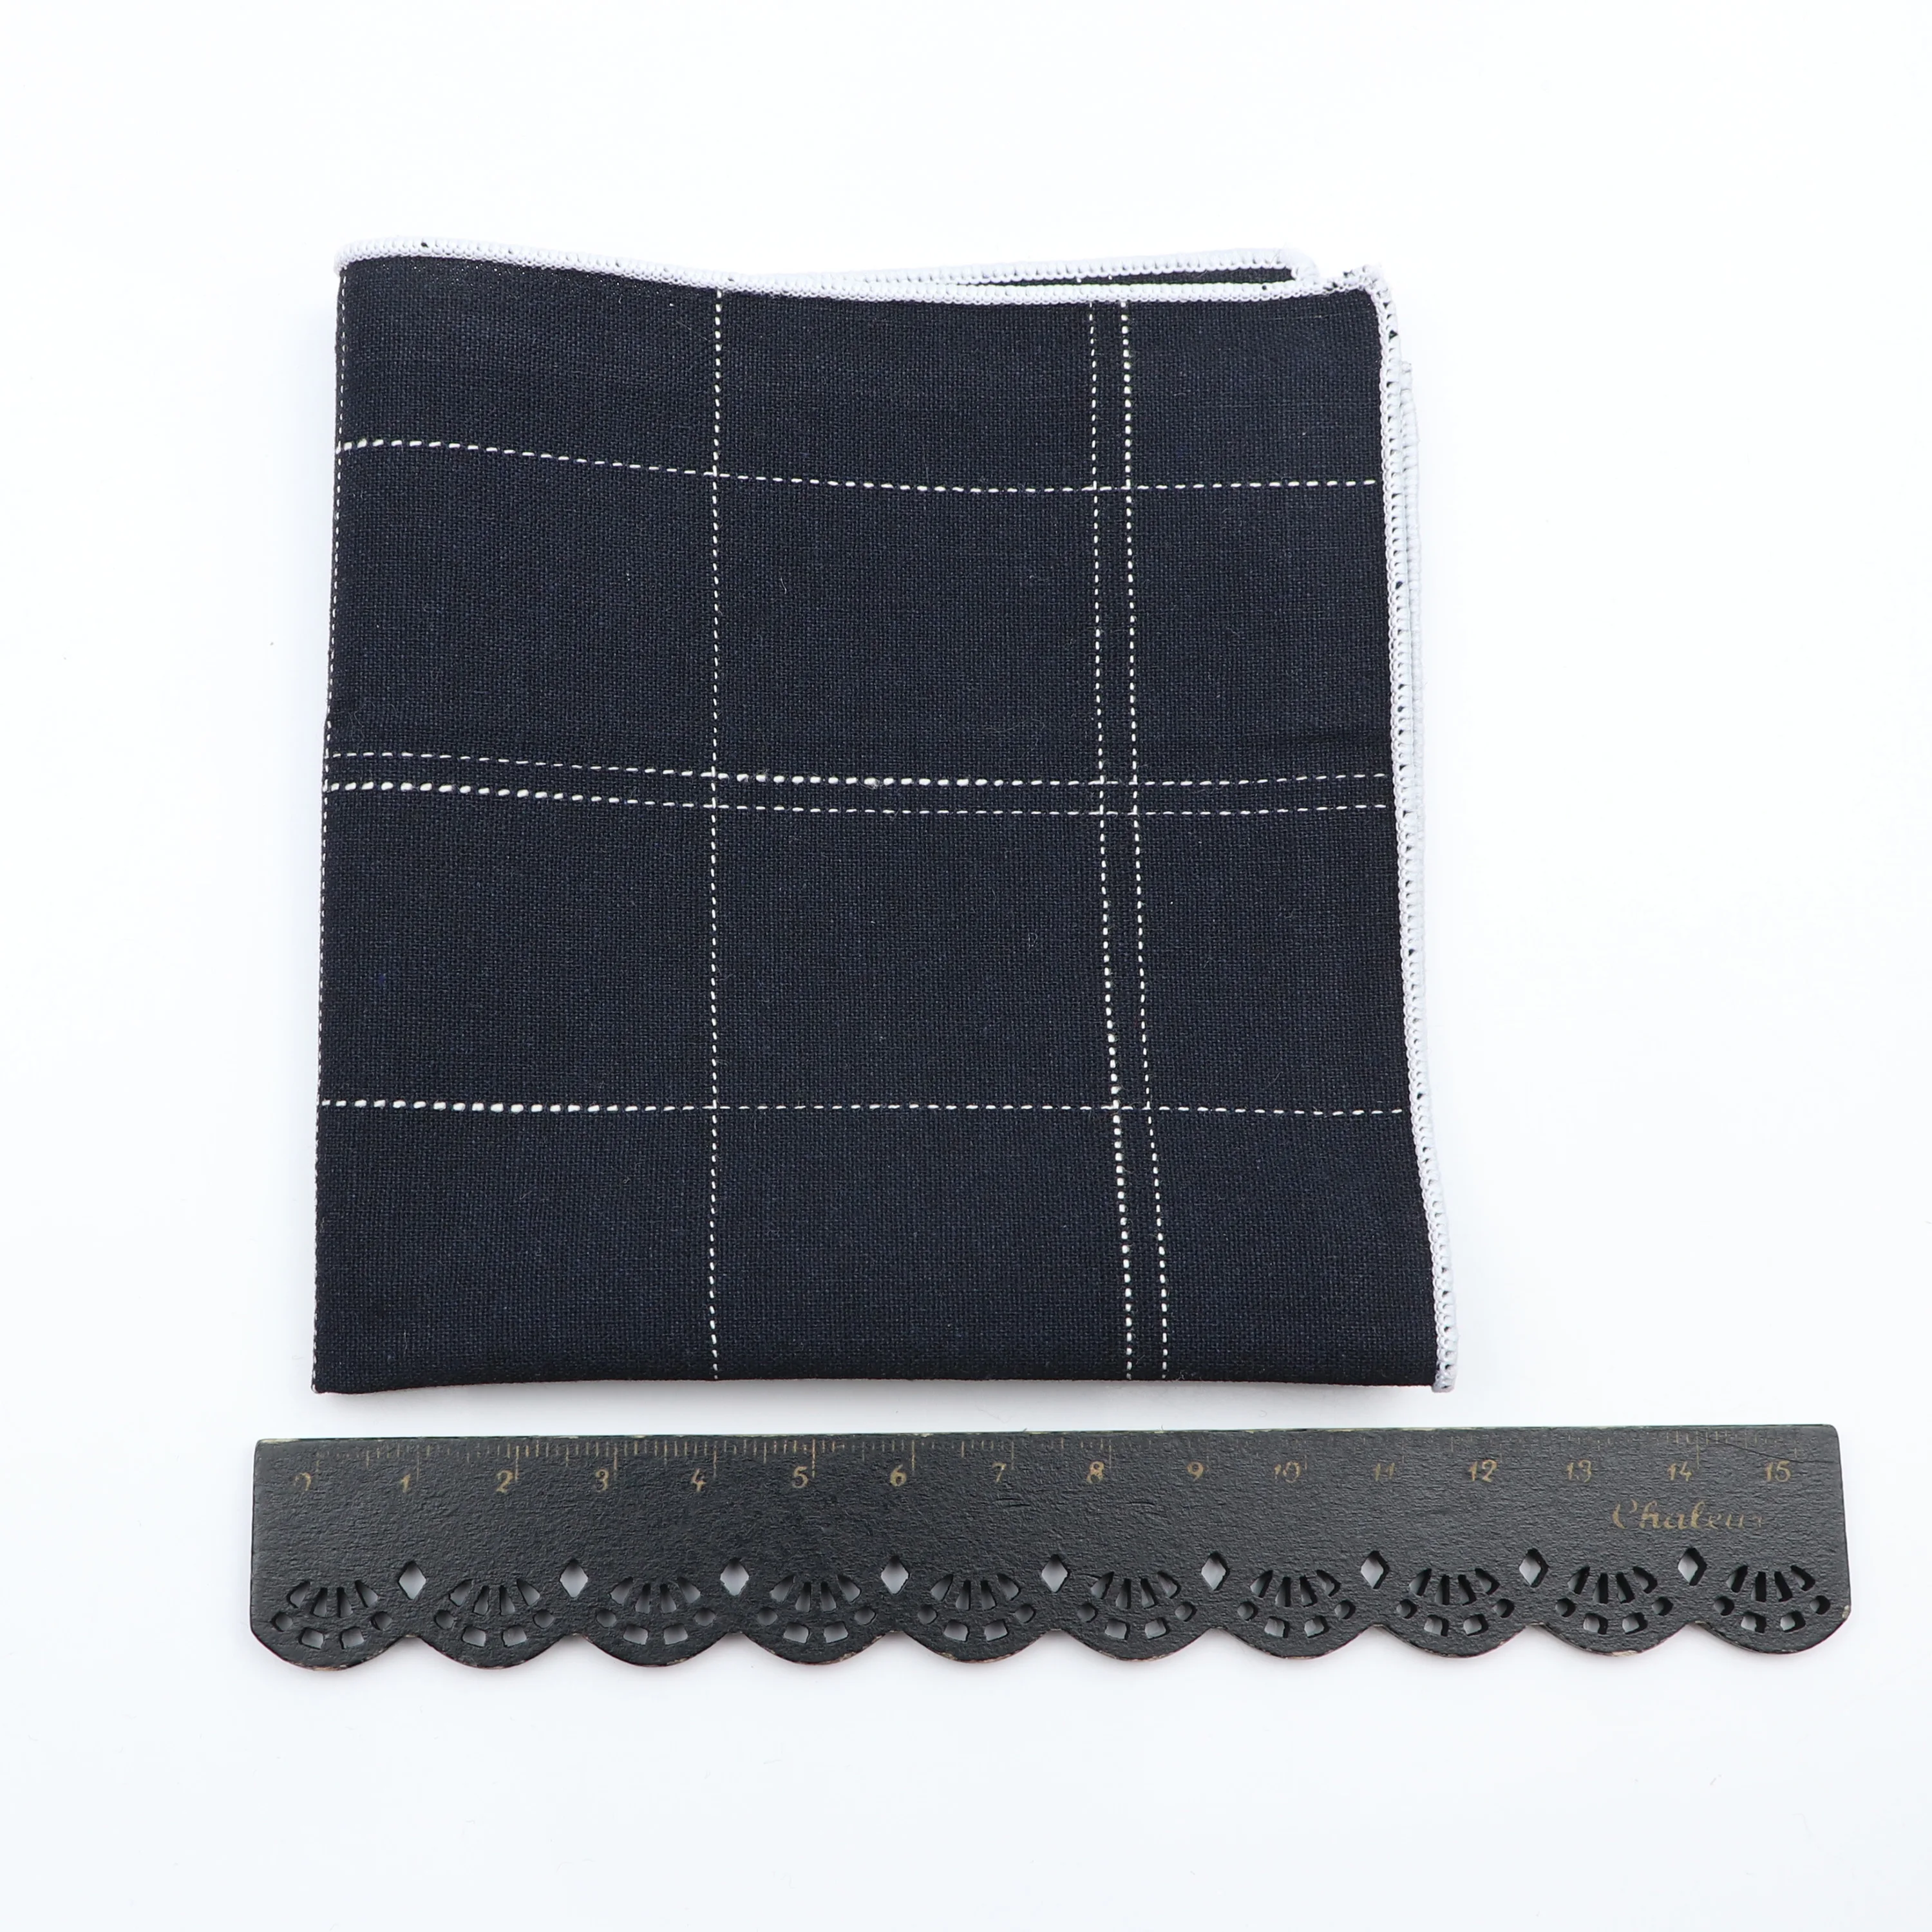 Preto cinza azul masculino terno bolso quadrado 100% algodão feito à mão 24cm largura listrado xadrez peito toalha hanky lenço formal presente